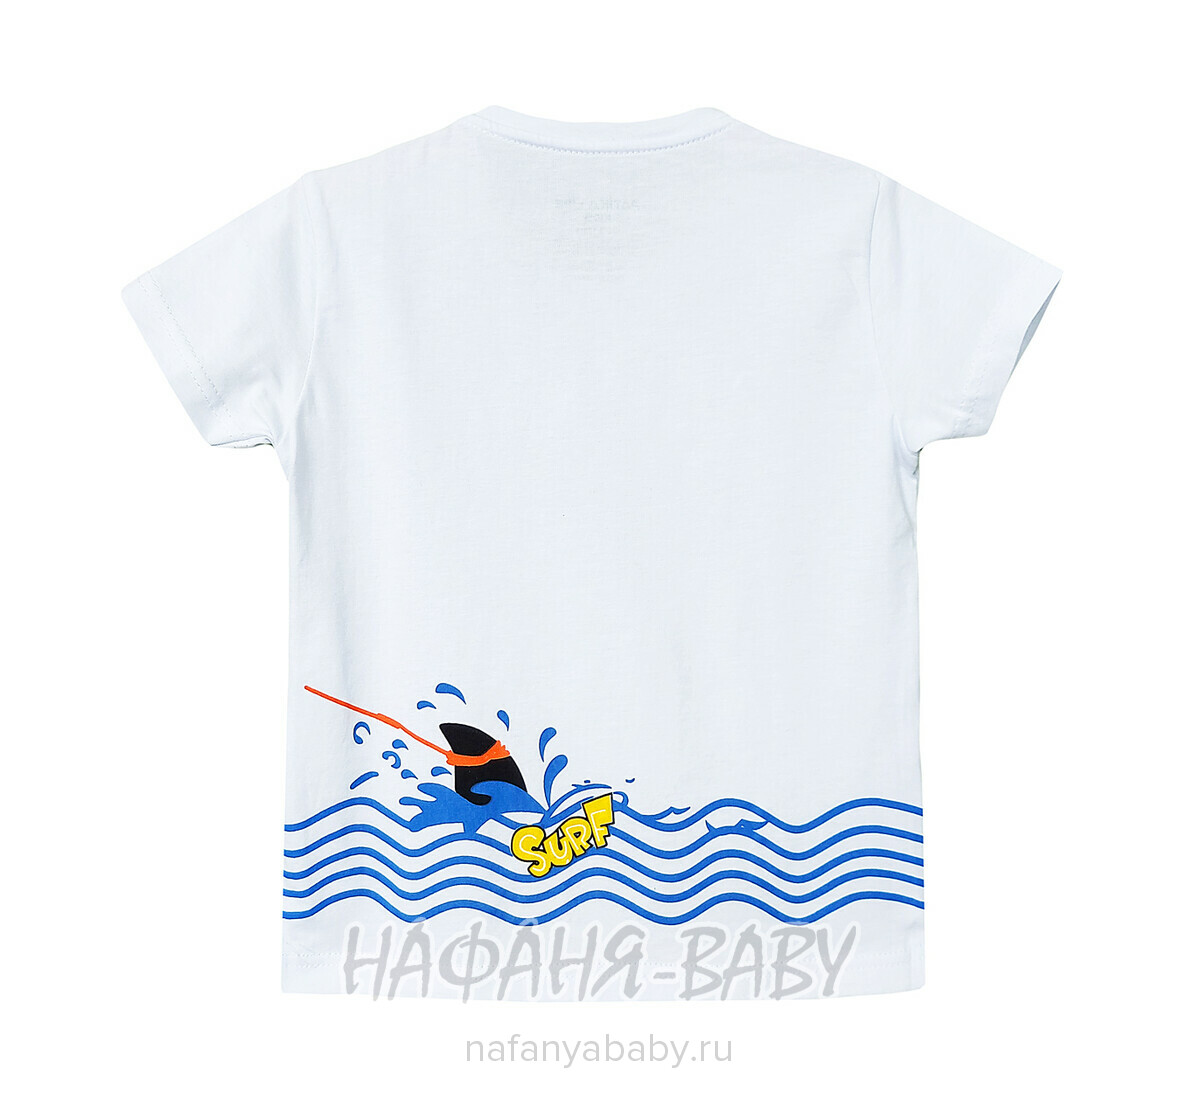 Детская футболка PATIKA арт. 7225, 1-4 года, цвет белый, оптом Турция